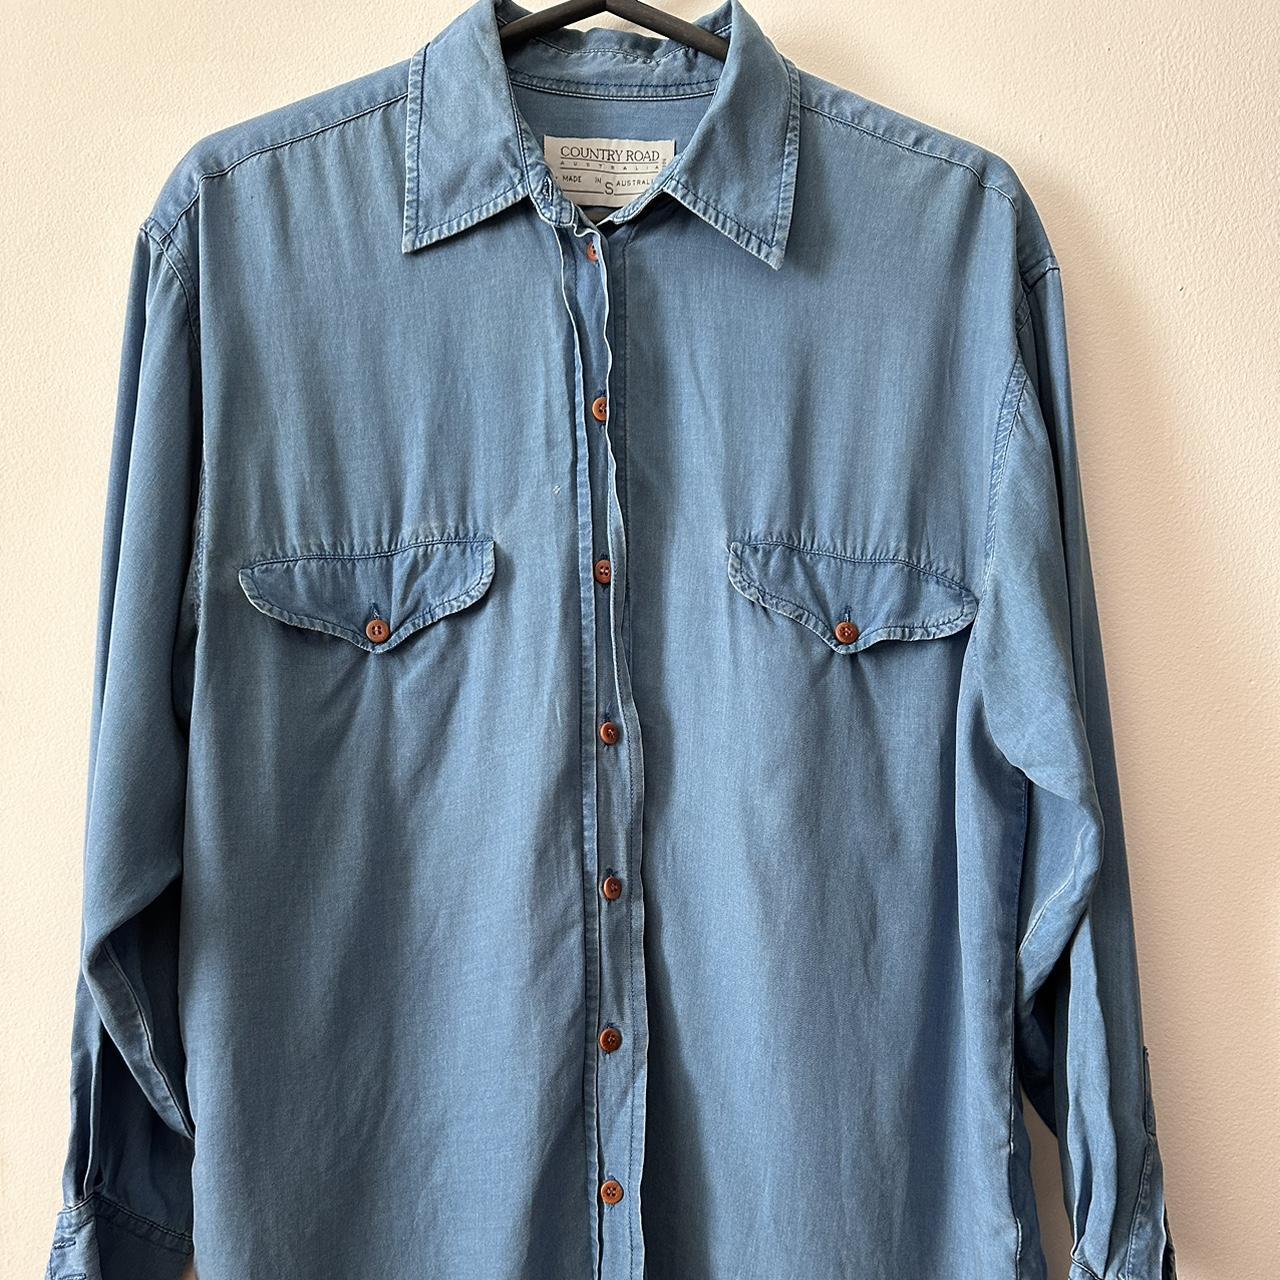 Country Road Men’s vintage denim shirt Size:... - Depop